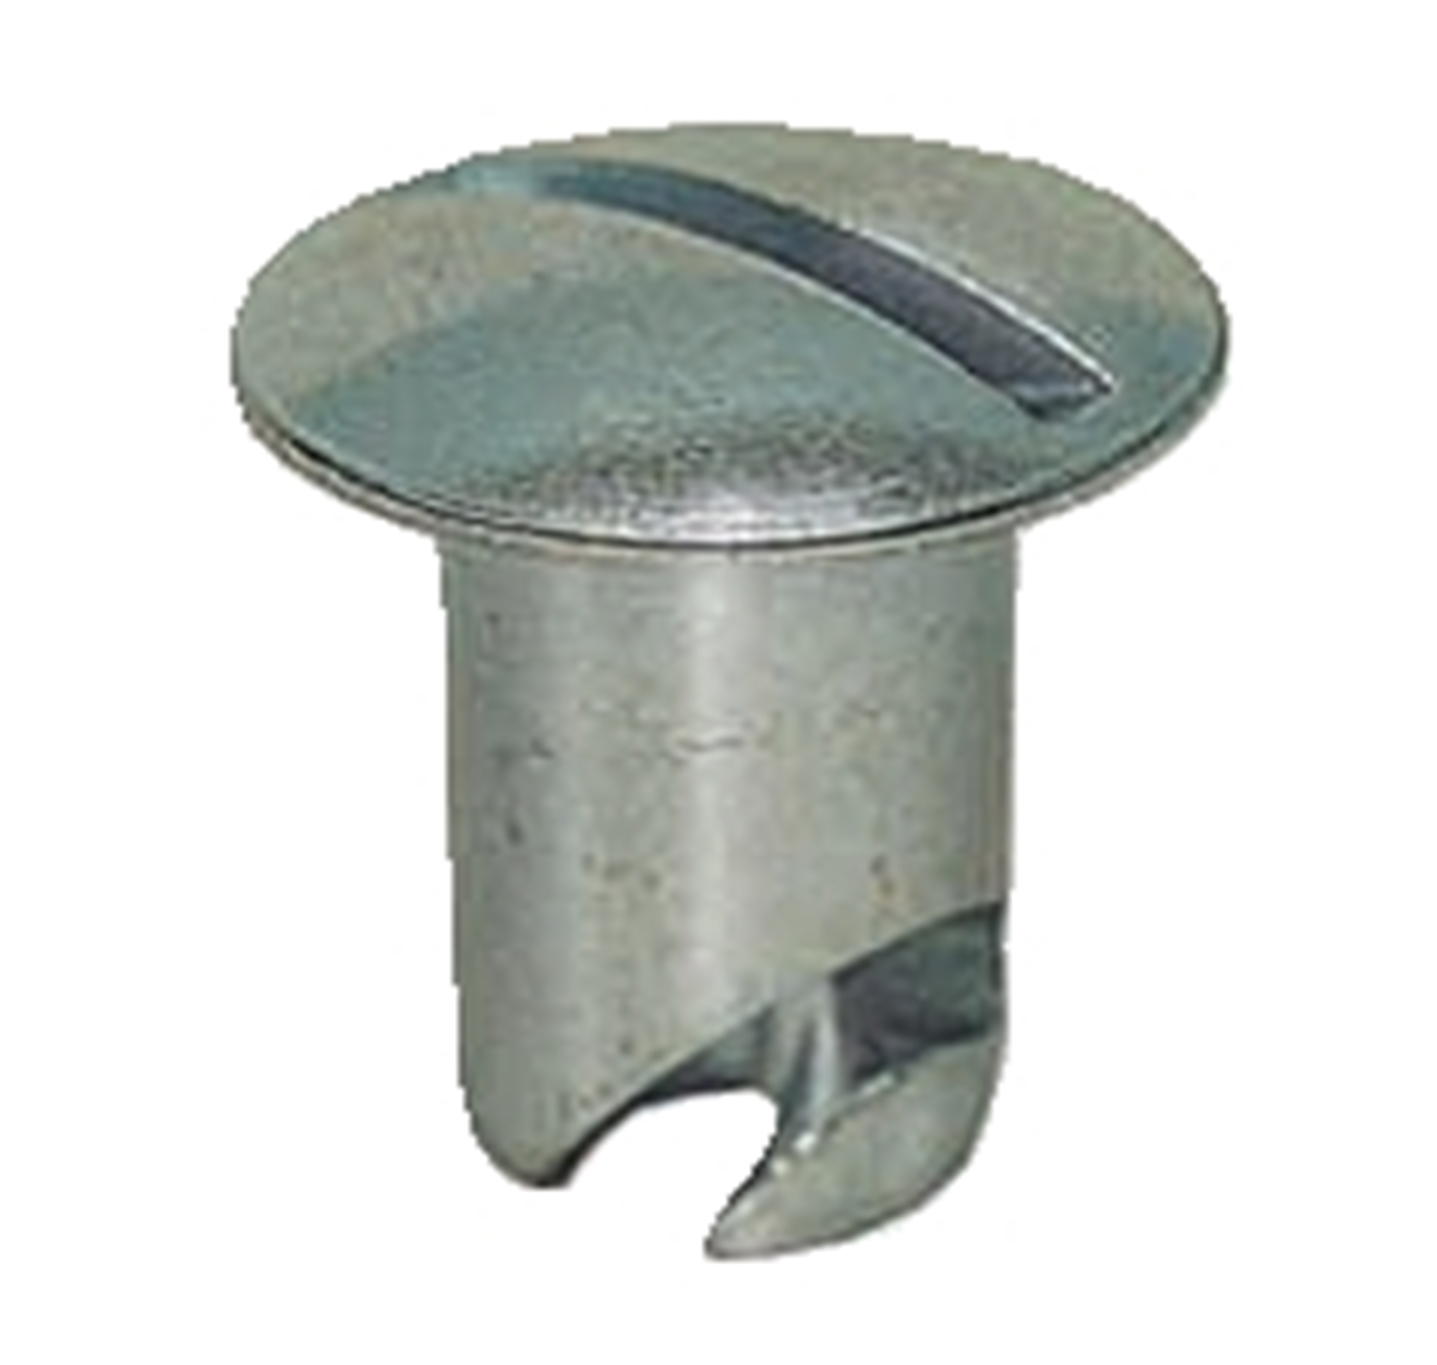 Panelfast 7/16" Aluminum Oval Head .500" Grip